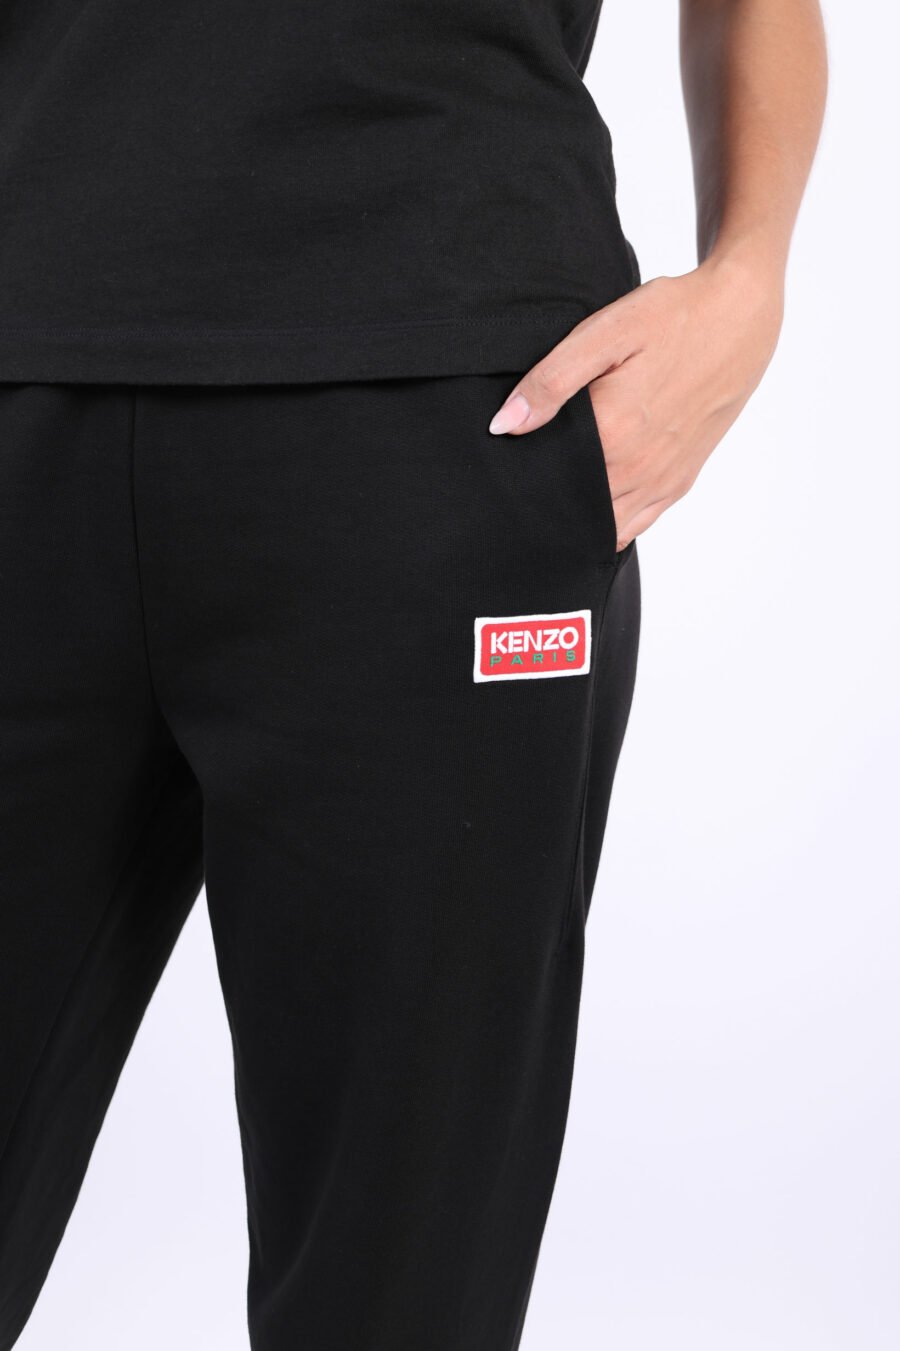 Pantalón de chándal negro con minilogo "kenzo paris" - 3612230514959 2 2